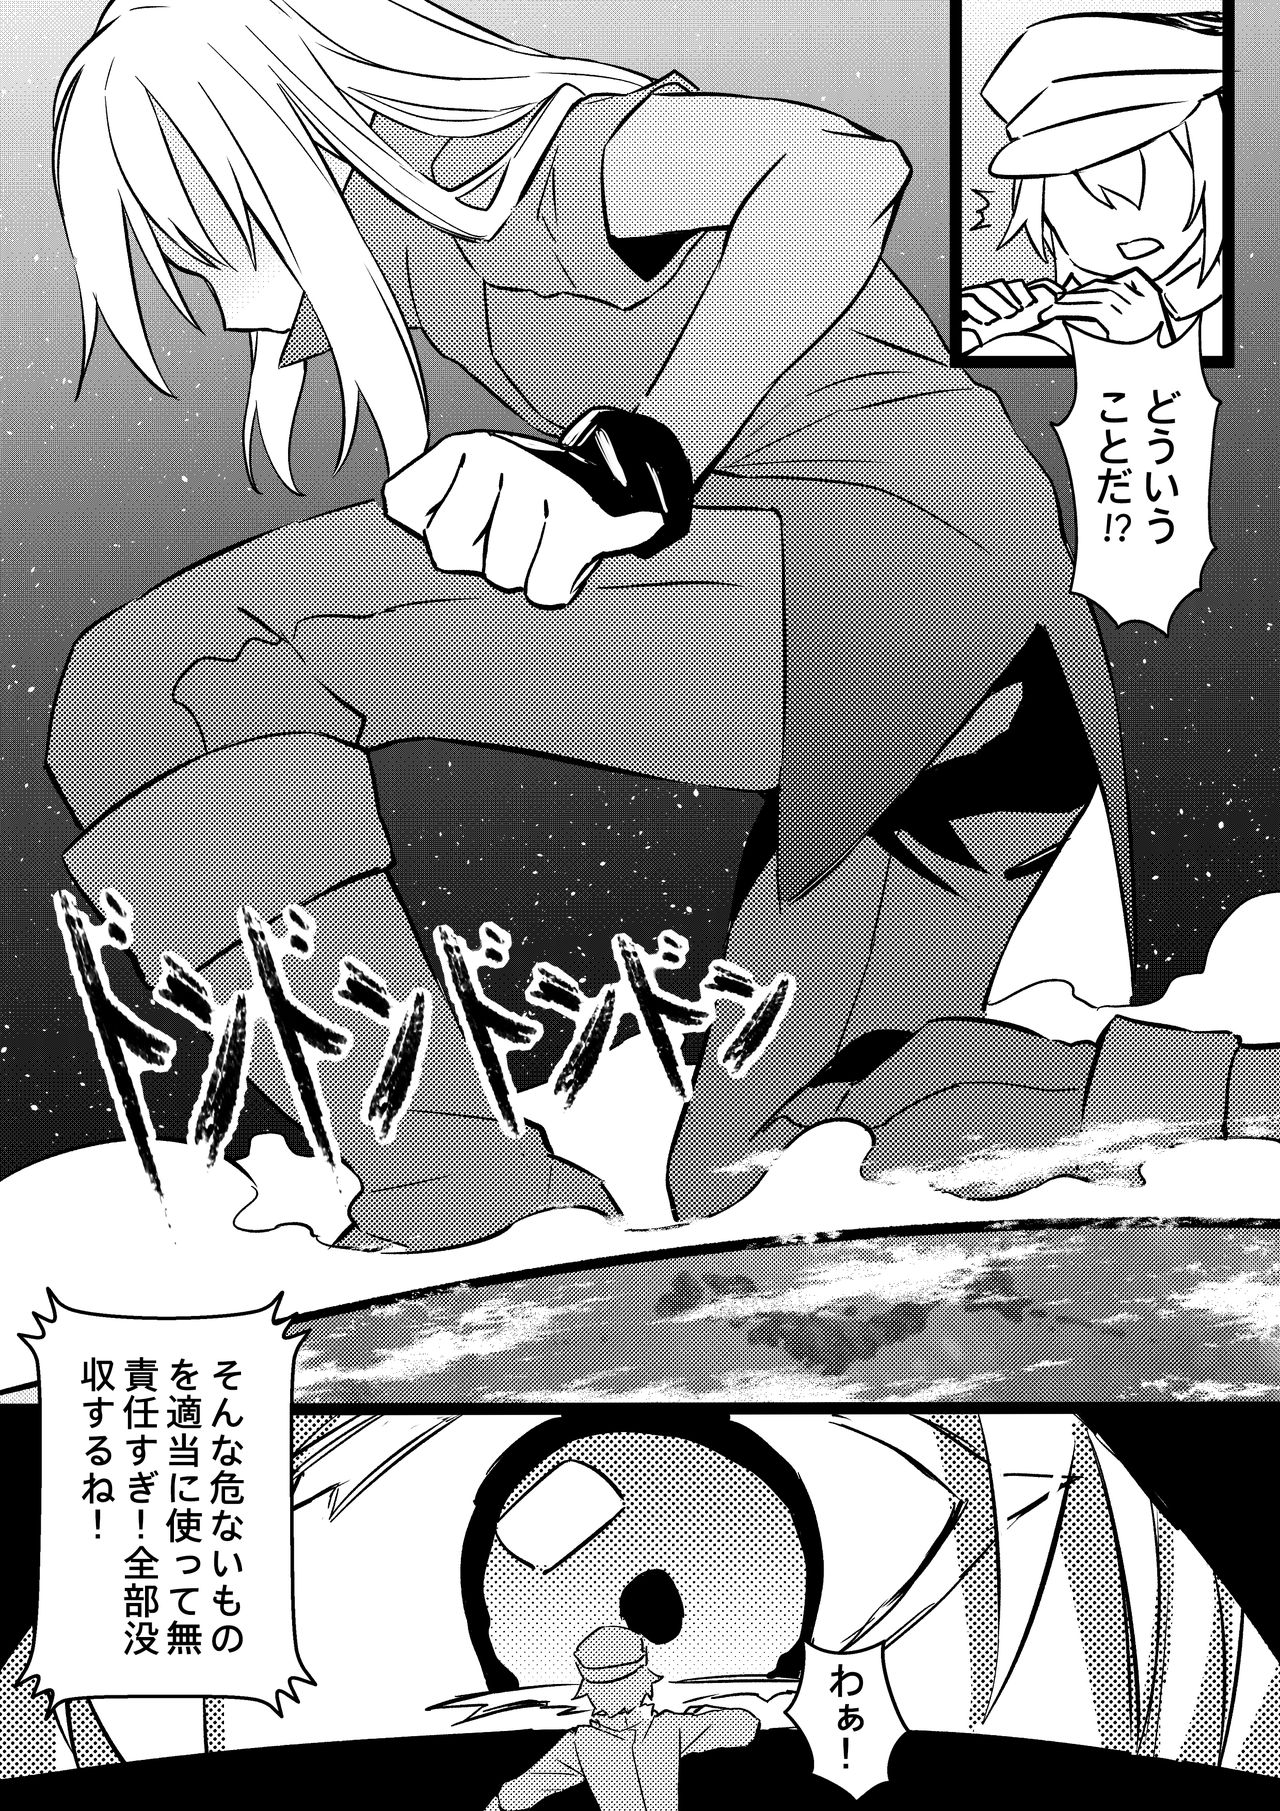 [亭風酒寺御] Demon Lord Rimuru (転生したらスライムだった件)